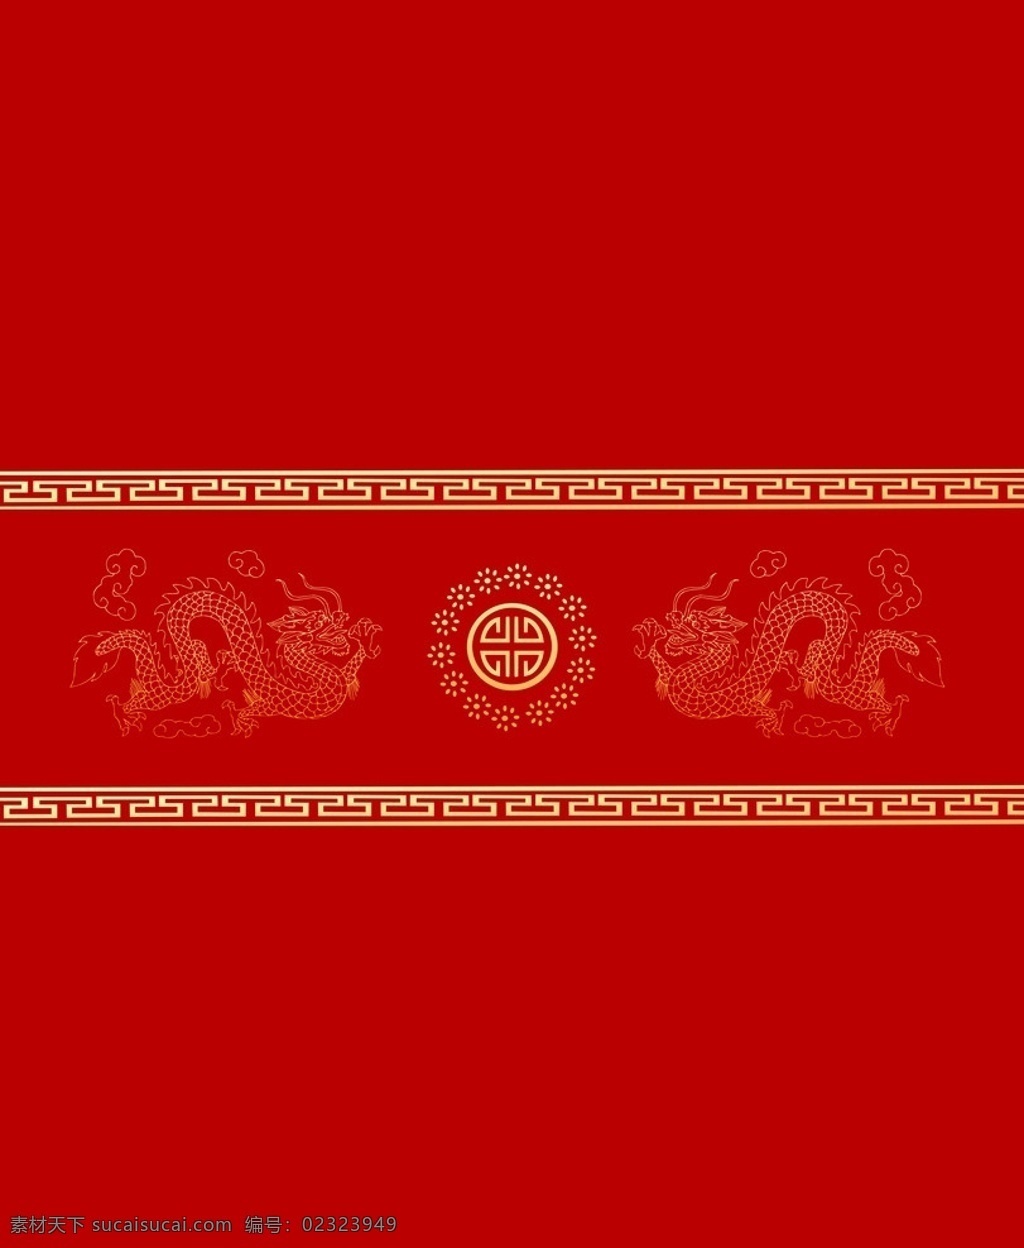 双龙戏珠 中国红 移门图 背景底纹 底纹边框